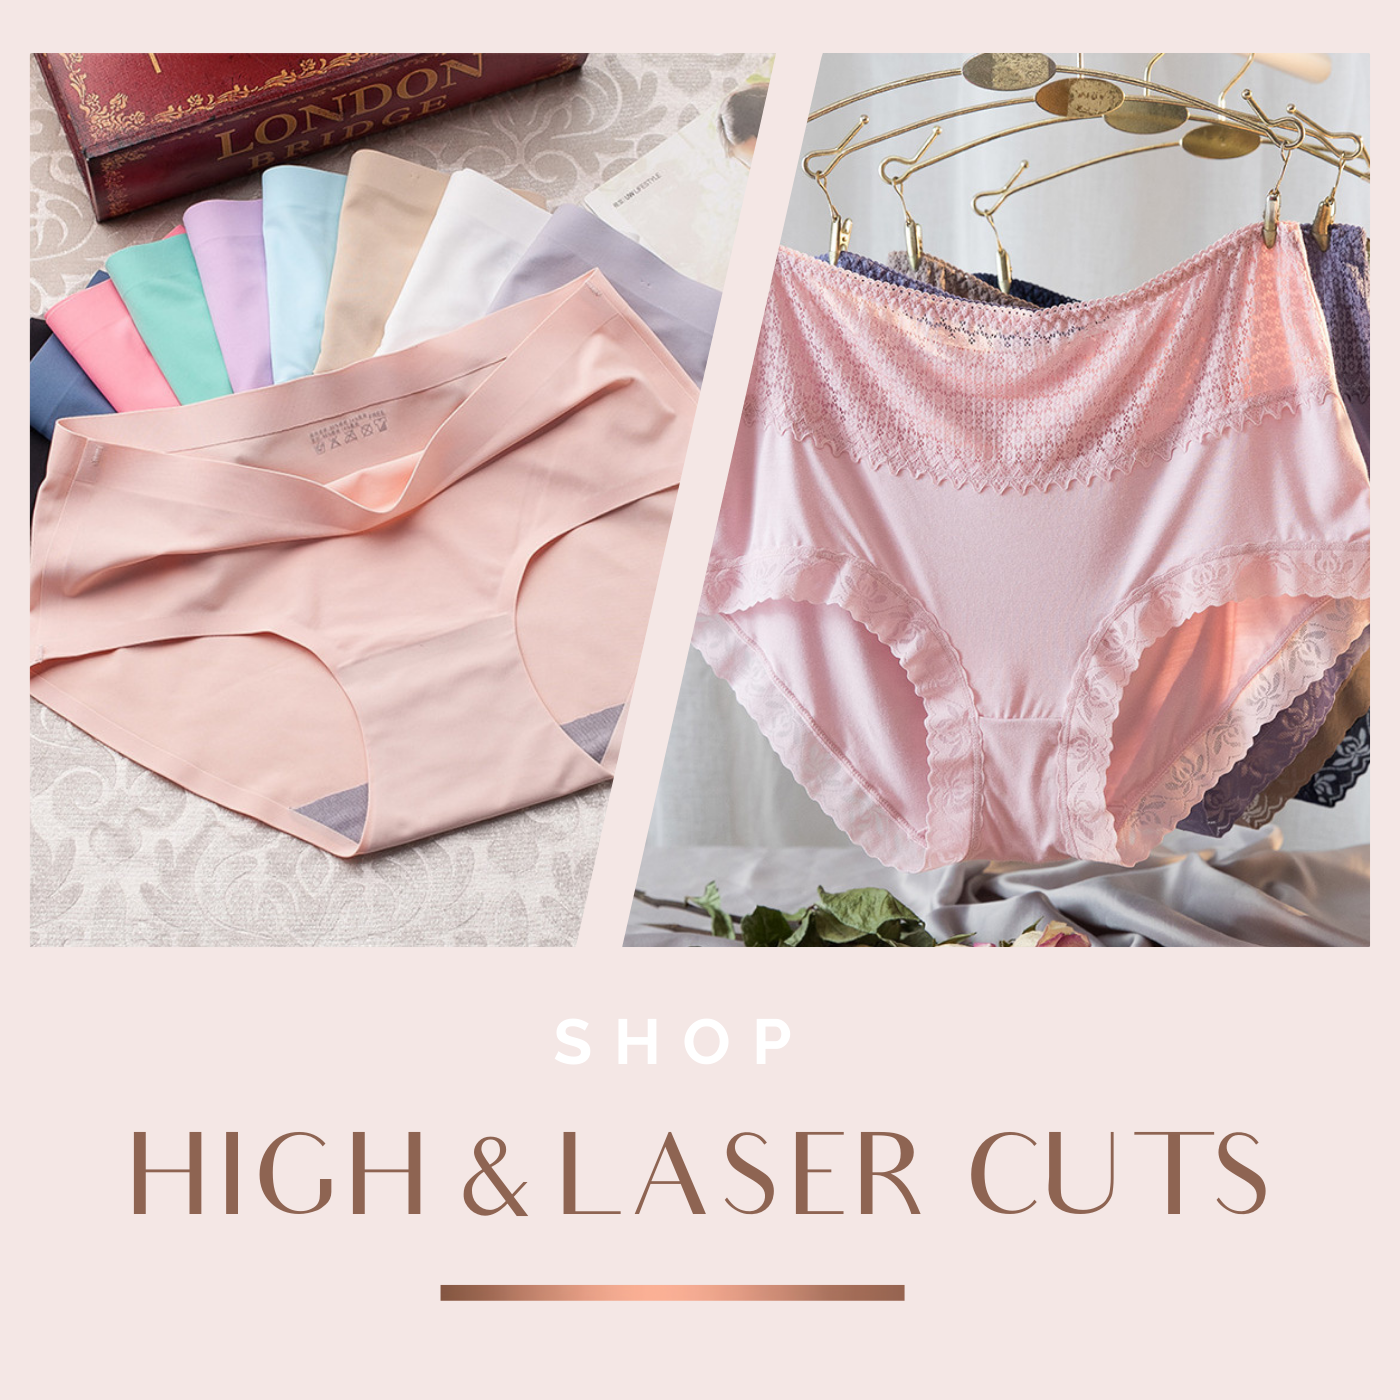 High & Laser Cuts